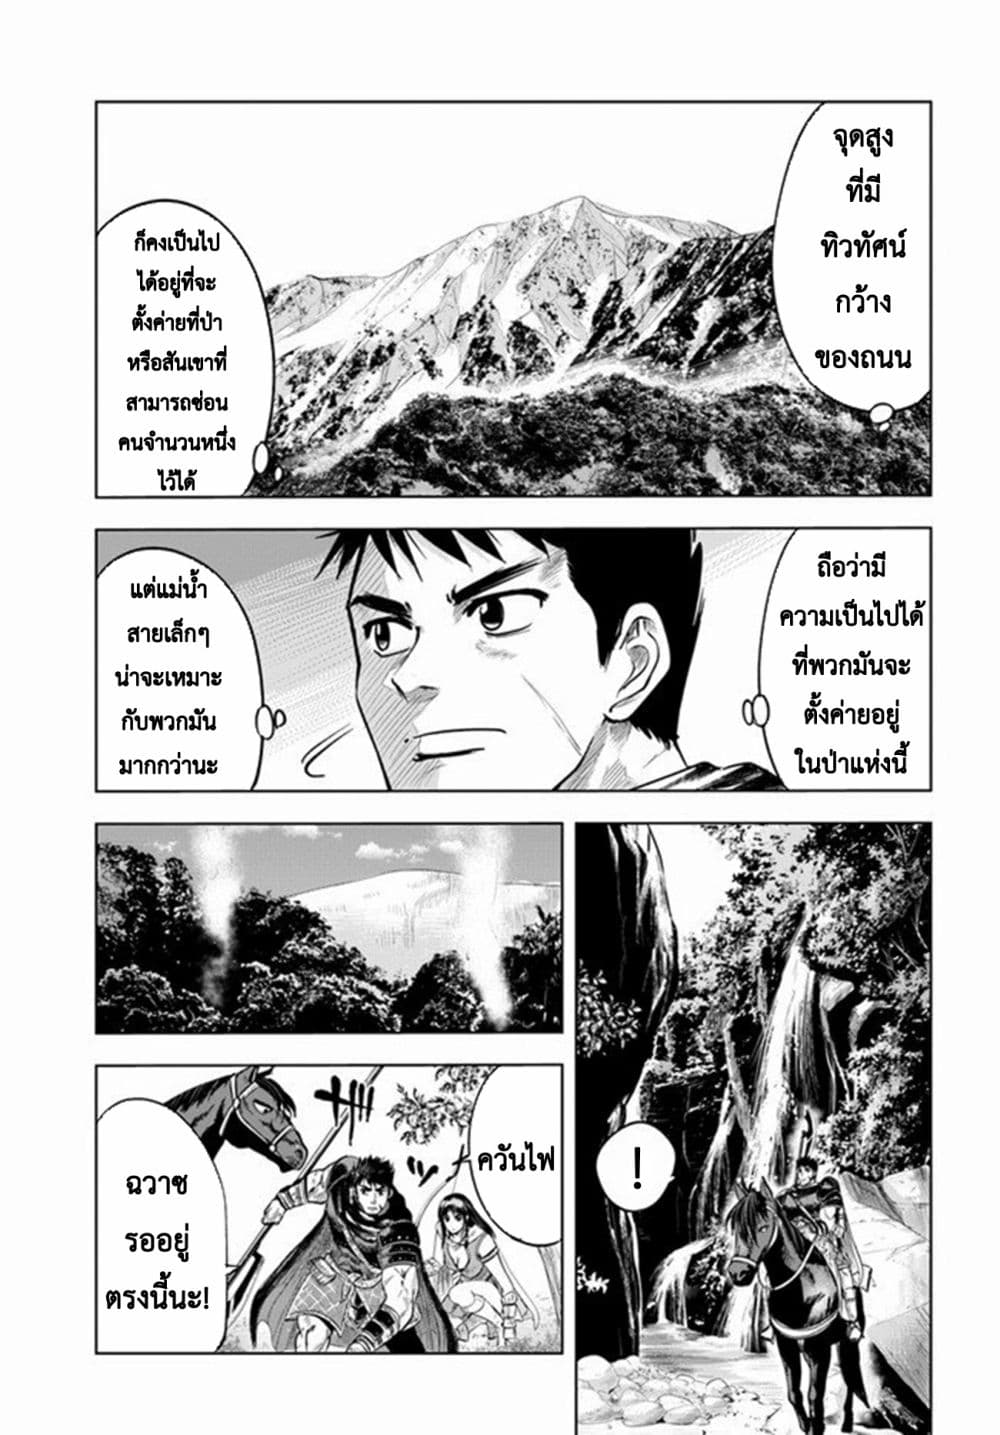 Oukoku e Tsuzuku Michi dorei Kenshi no Nariagari Eiyutan (Haaremu Raifu) - Road to the Kingdom Slave Swordsman the Rise of Heroes - Harem Life 9.2-9.2